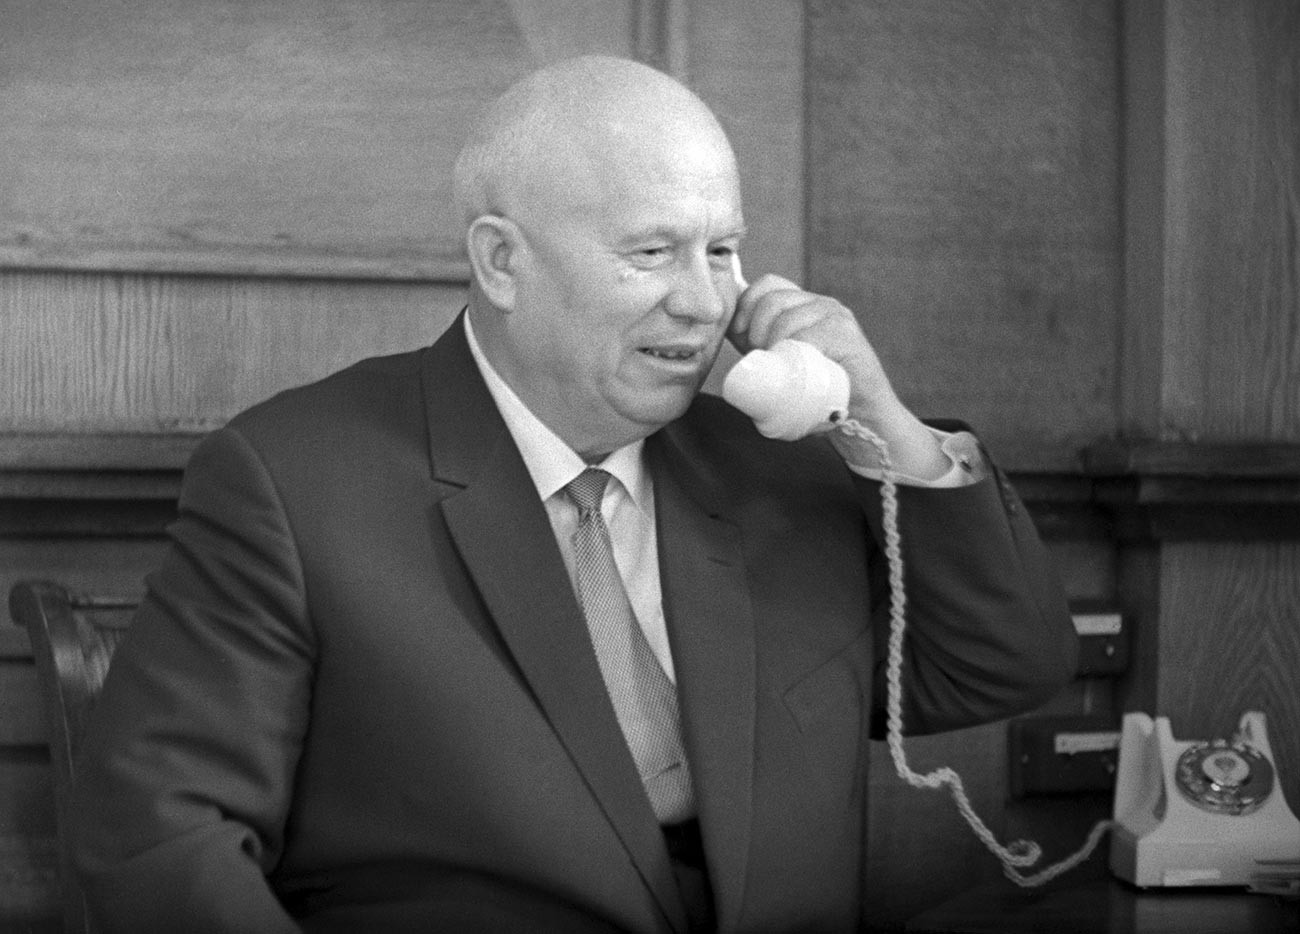 Москва, Кремљ. Први секретар ЦК КПСС Никита Хрушчов у свом радном кабинету.